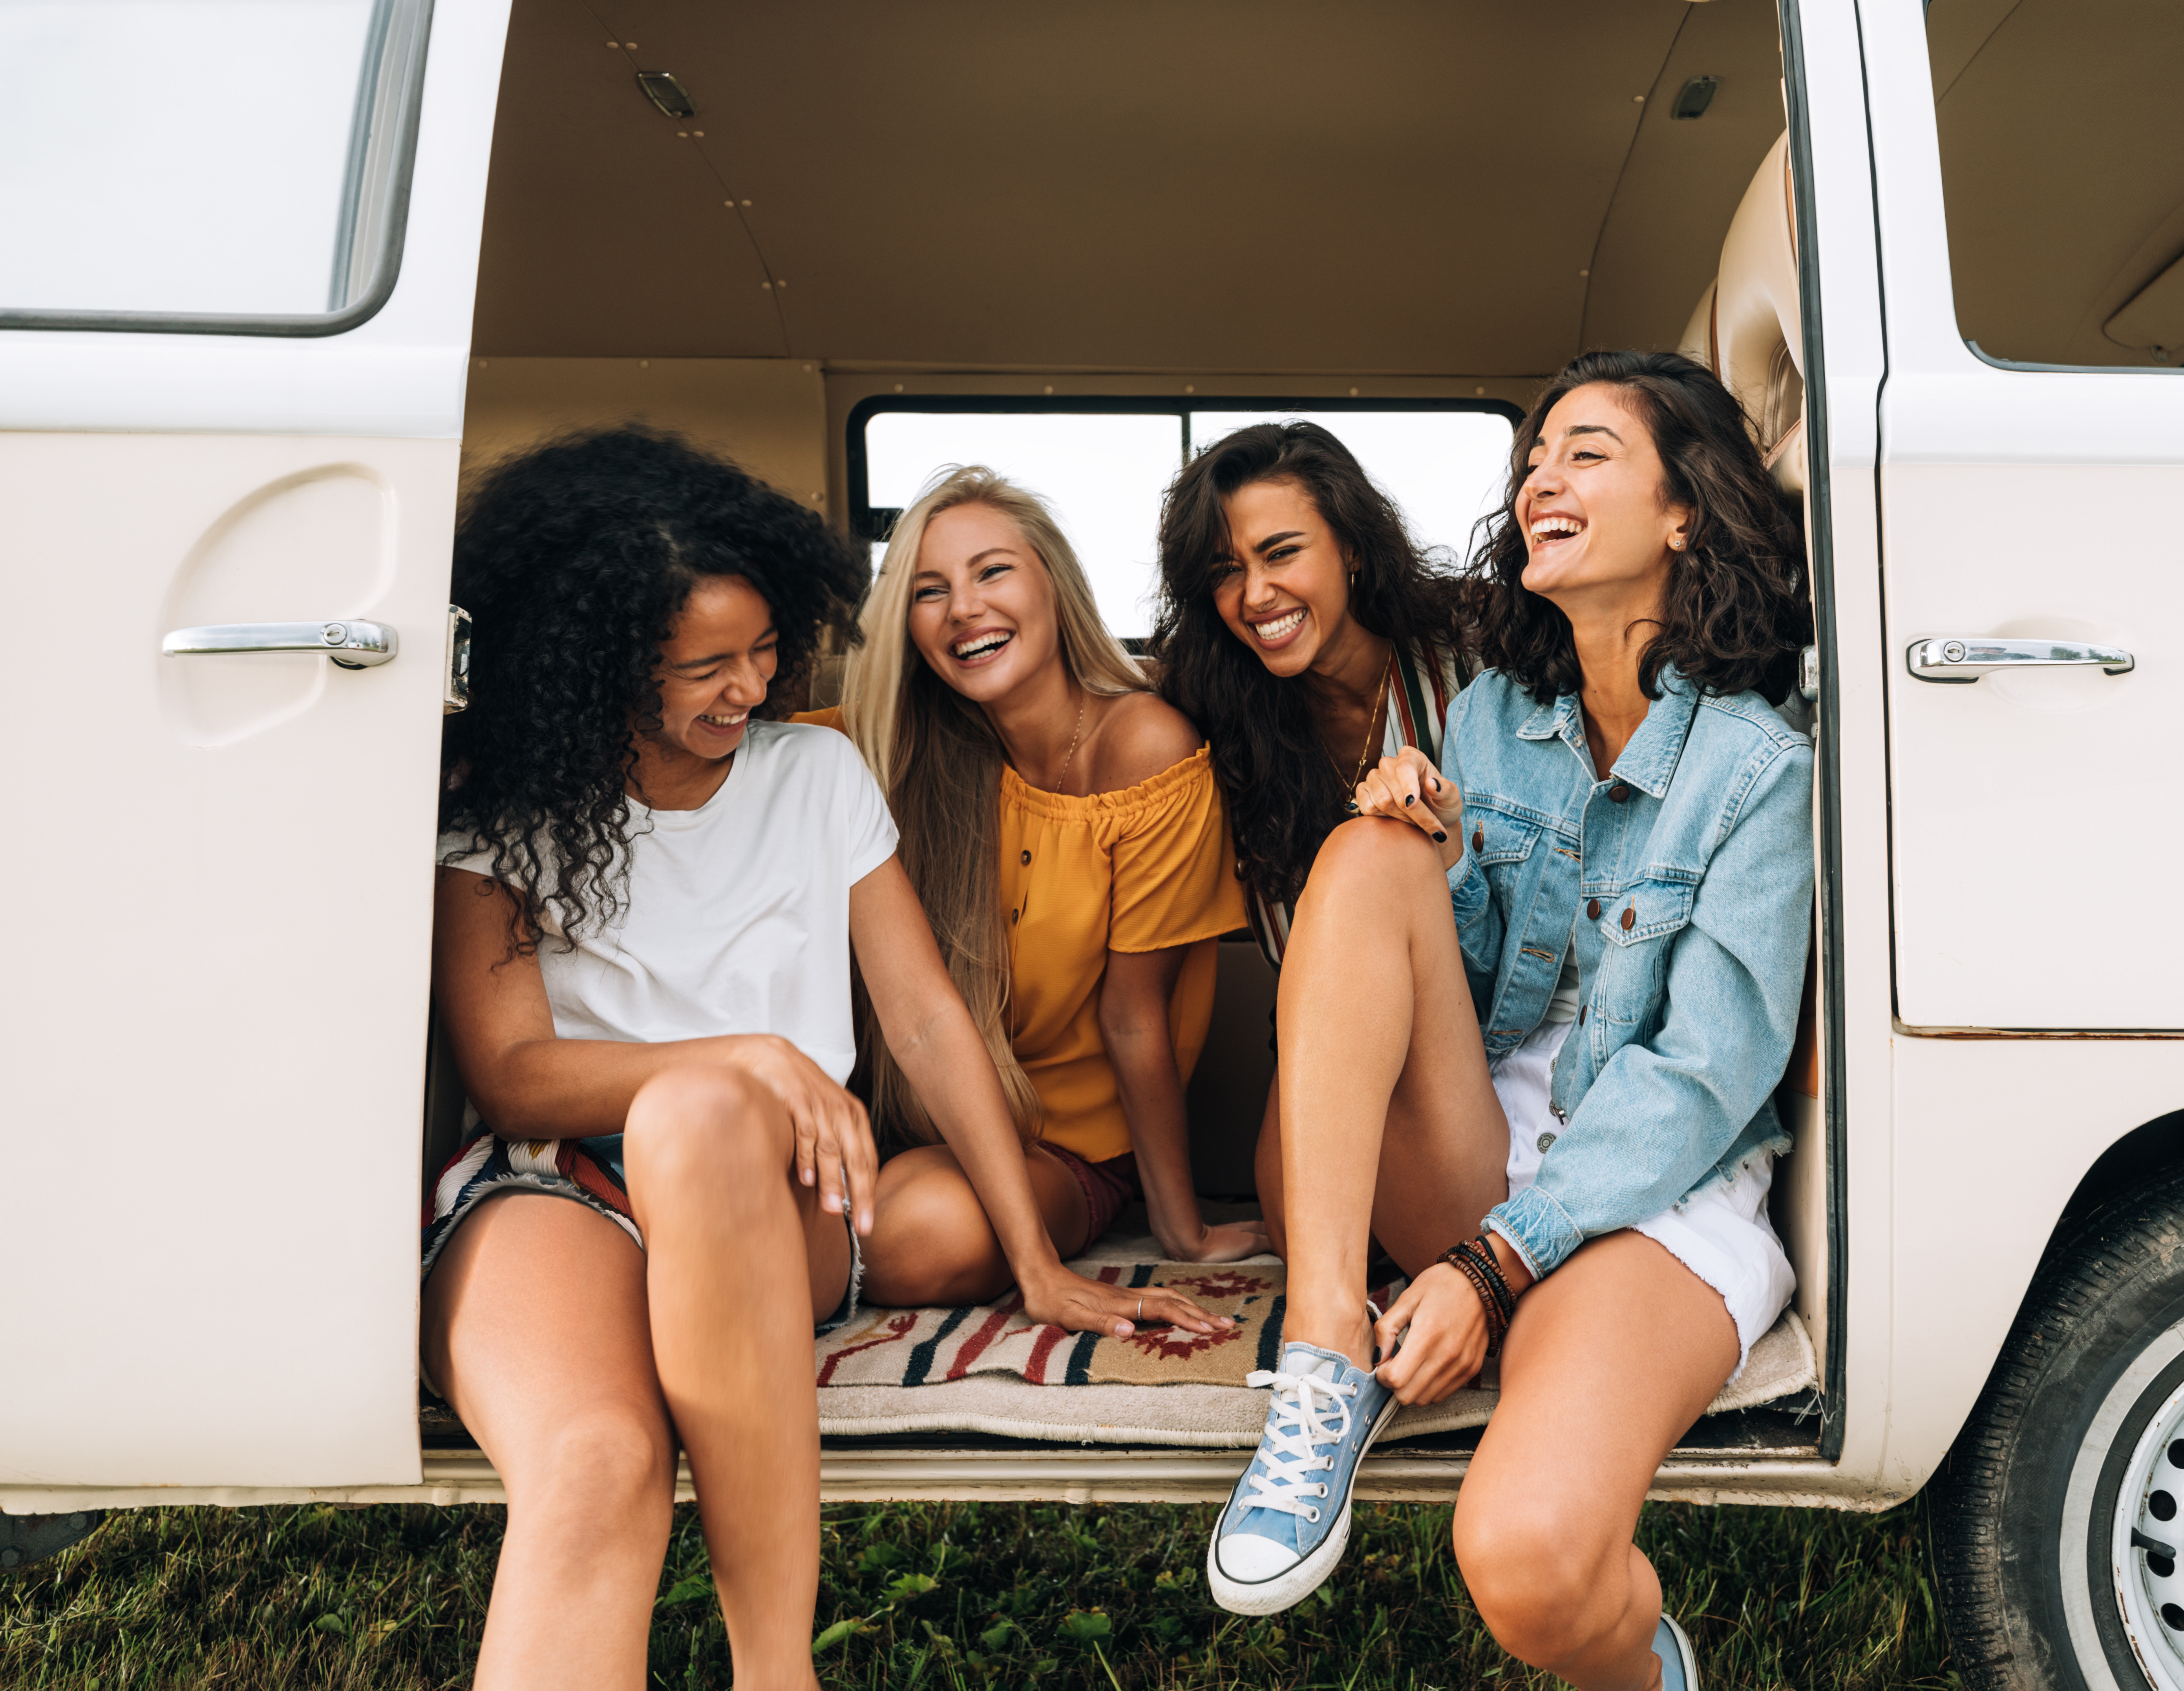 Reseförsäkring för resan - Glada unga kvinnor sitter och skrattar i en skåpbil under en sommardag, vänskap och roadtrip-koncept.